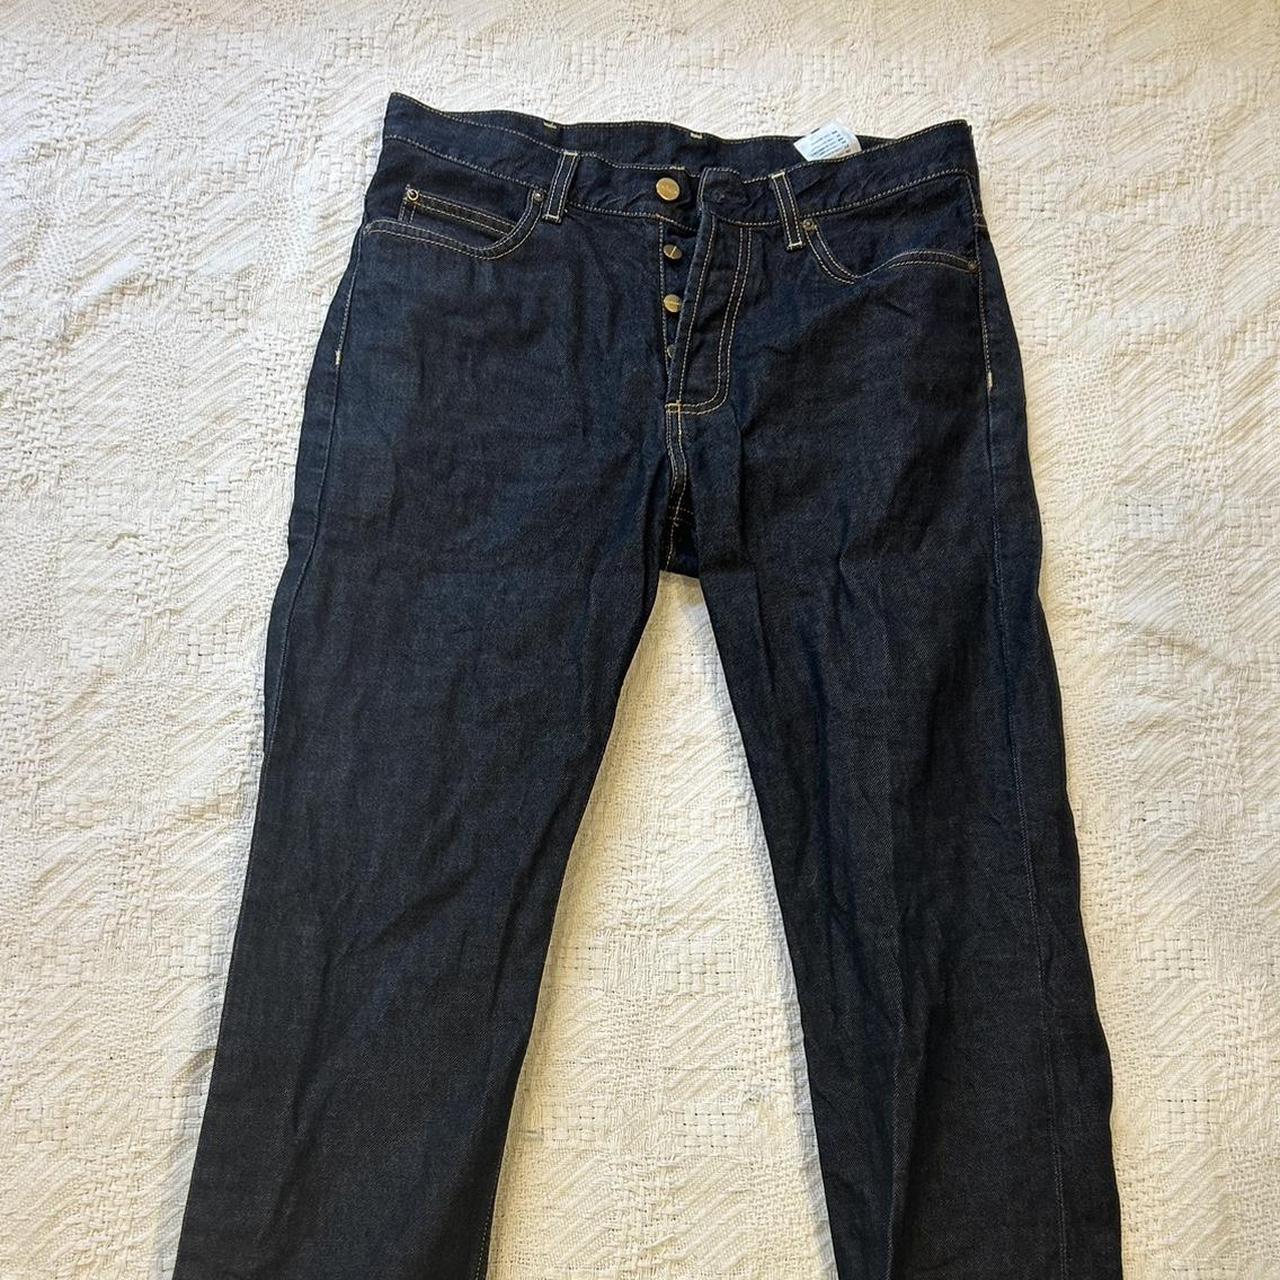 Carhartt Jeans W 30 L 32 - Depop